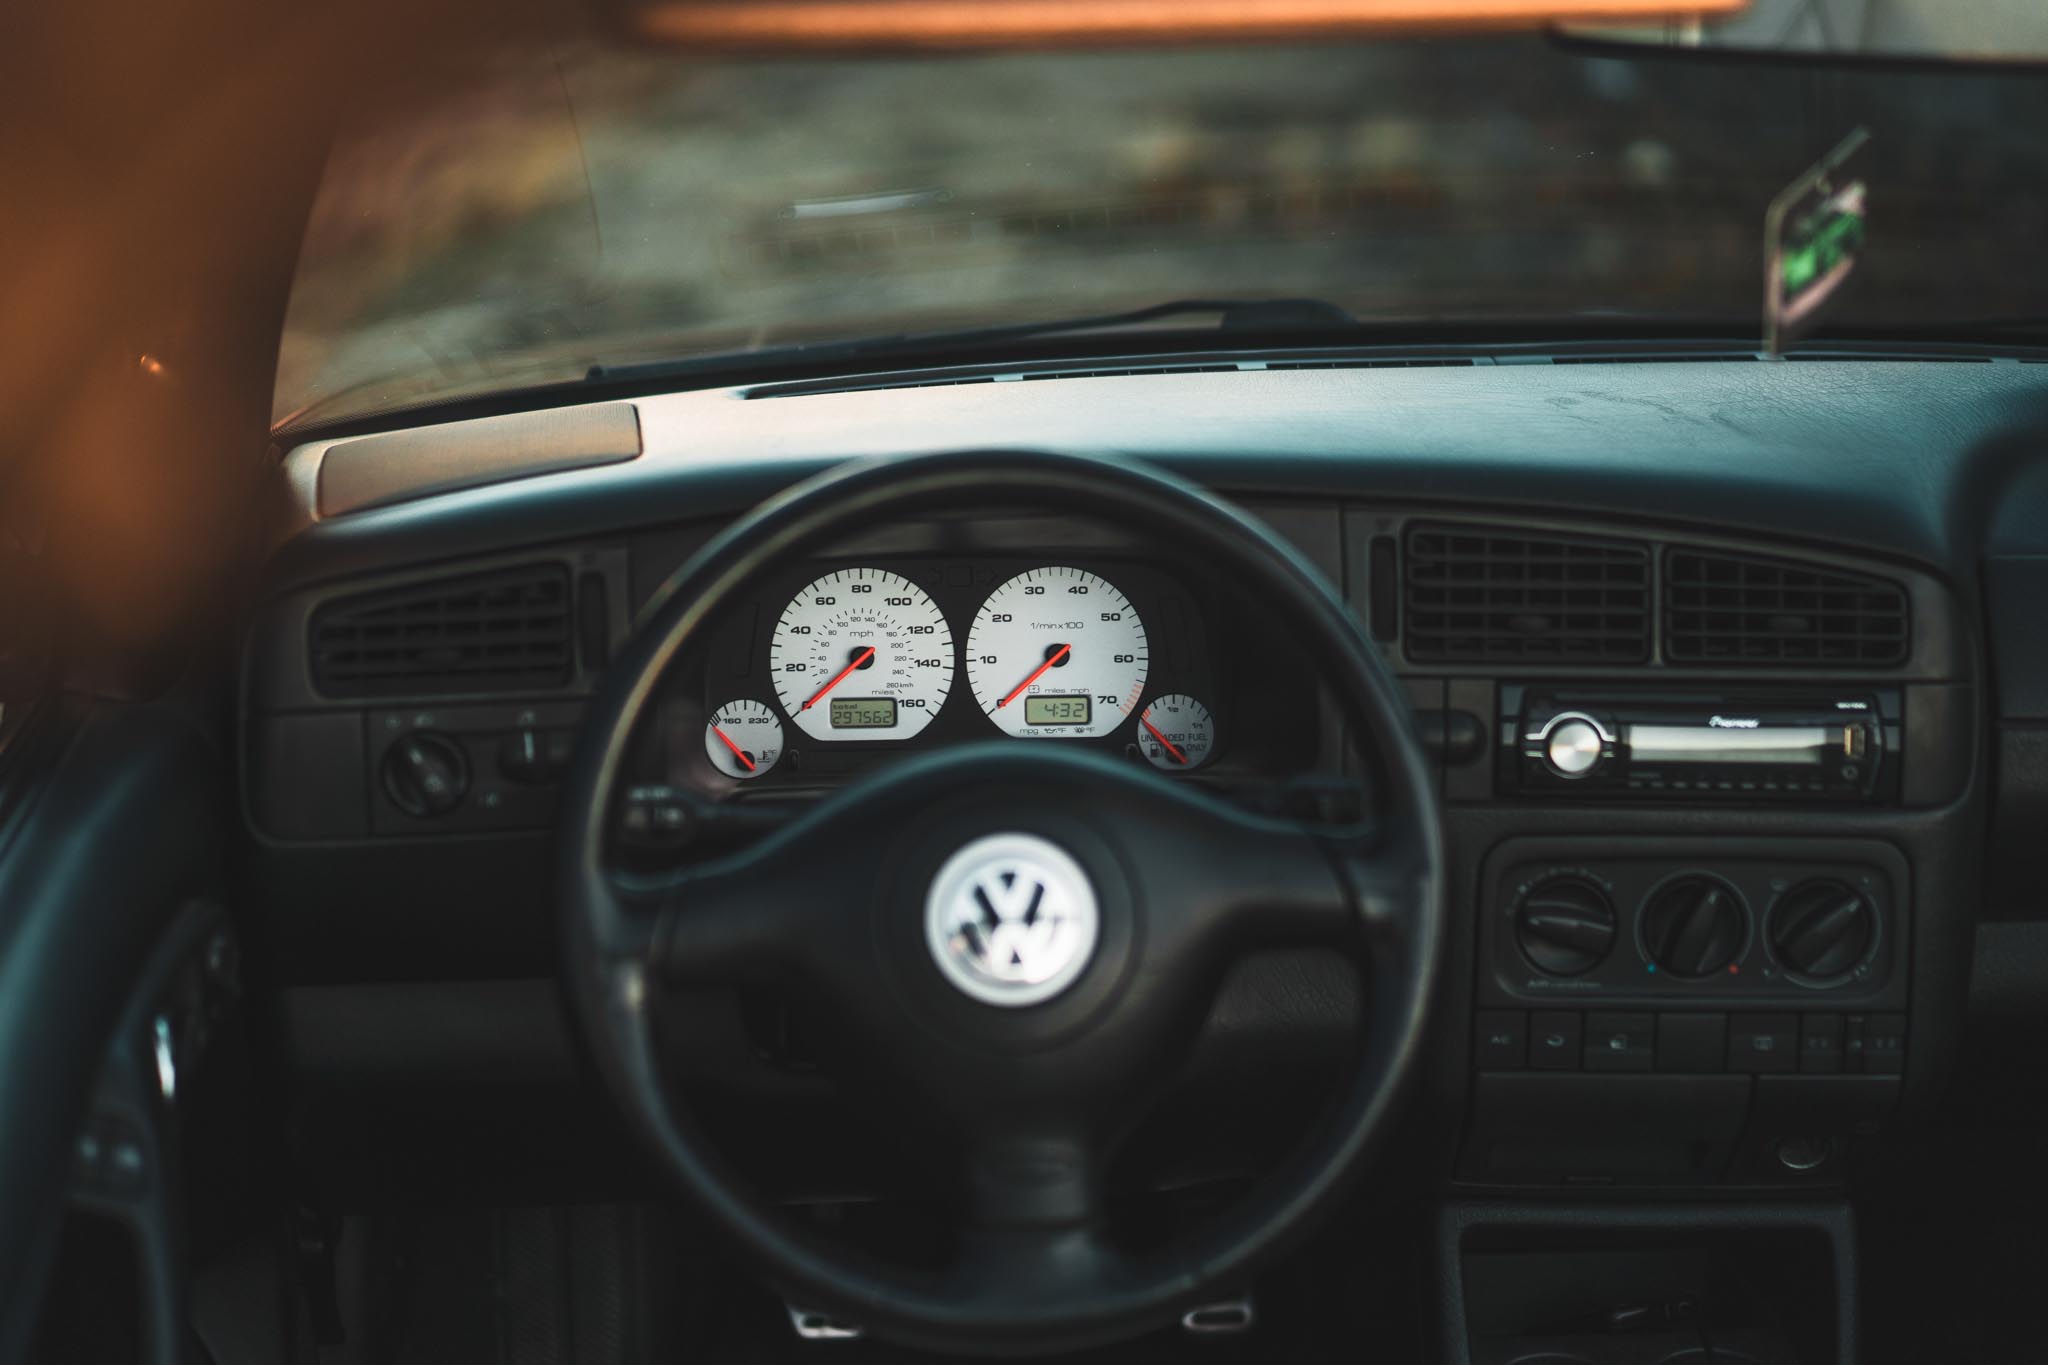 MK3 Volkswagen gauges